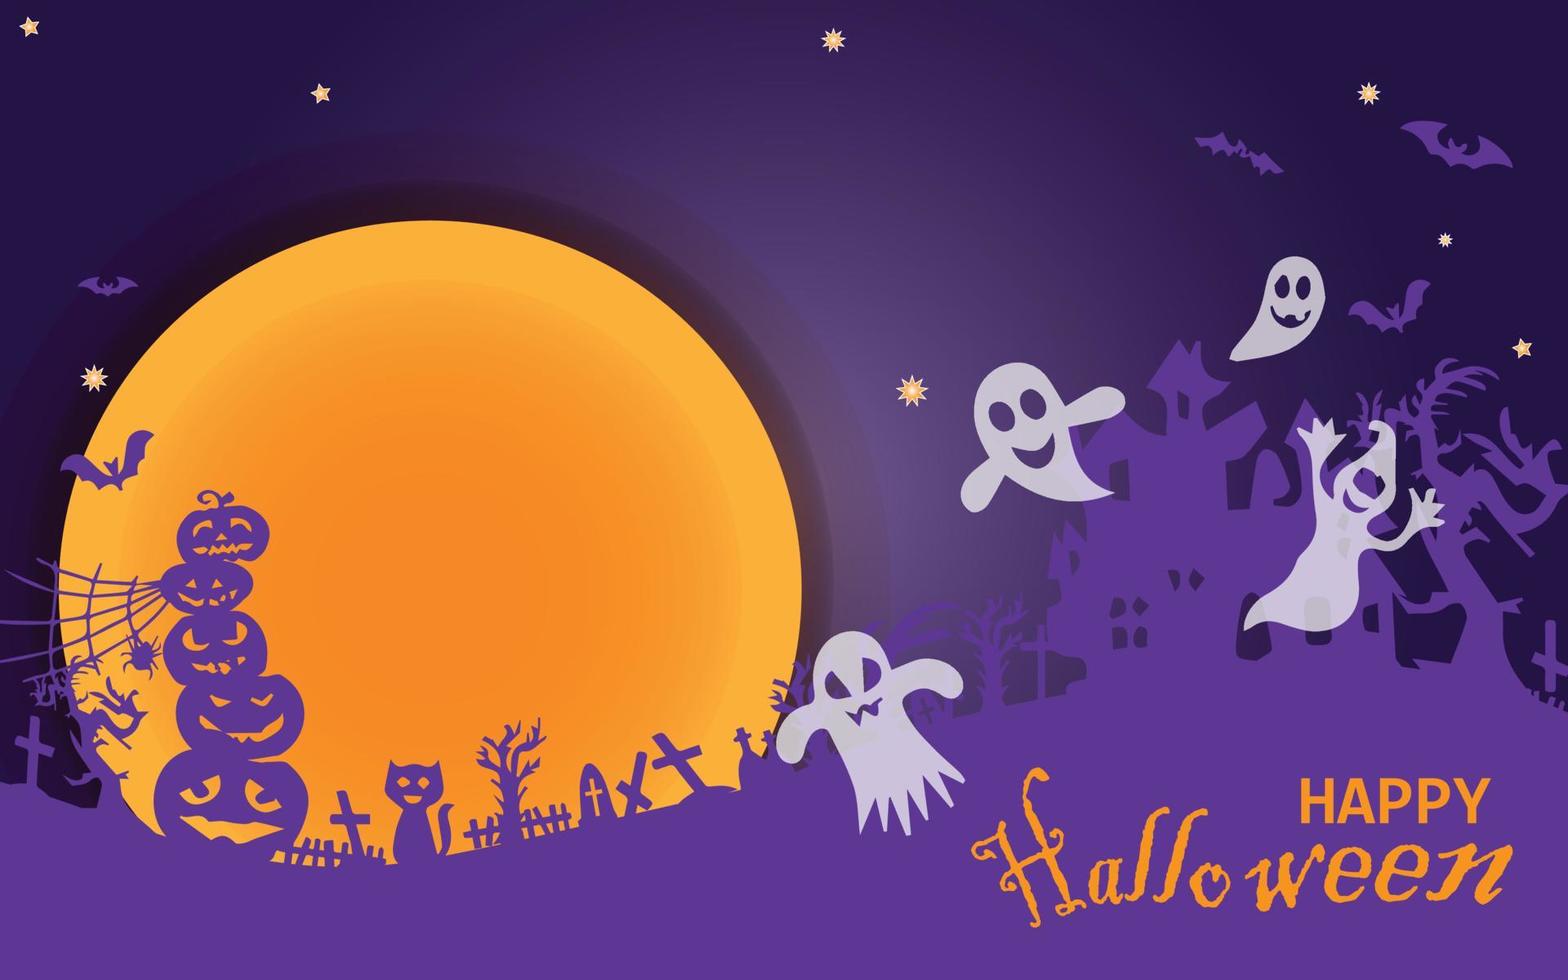 bannière de vente halloween horizontale. bannière de promotion de vacances avec fantôme volant, fantôme, araignée noire et chauve-souris, citrouille effrayante, zigzag et confettis sur fond orange, illustration vectorielle. vecteur